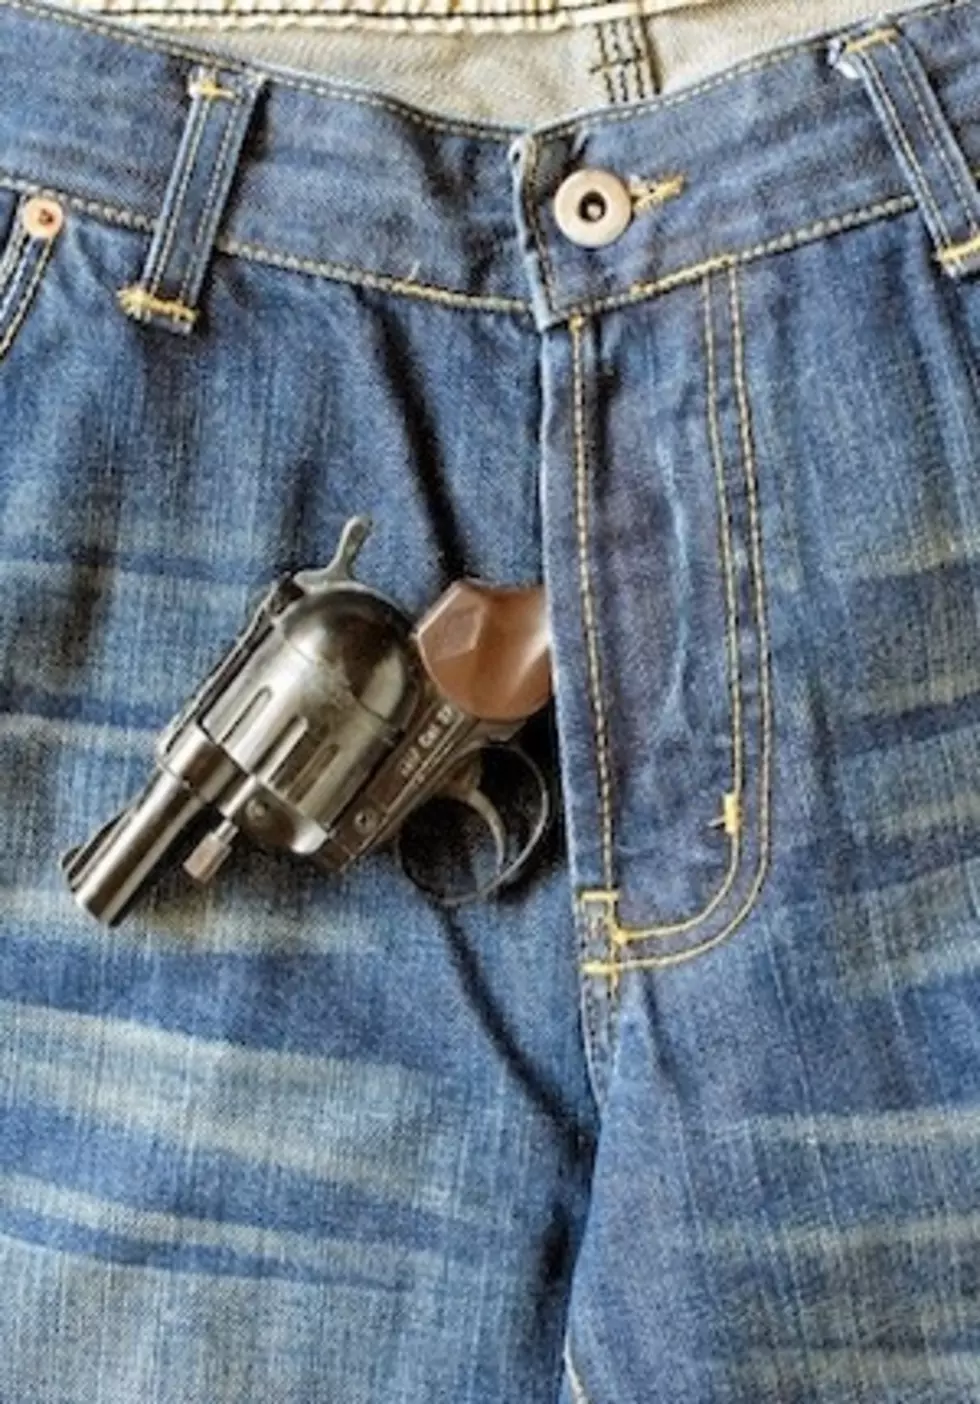 Loaded Gun Misfires in Guy&#8217;s Pants